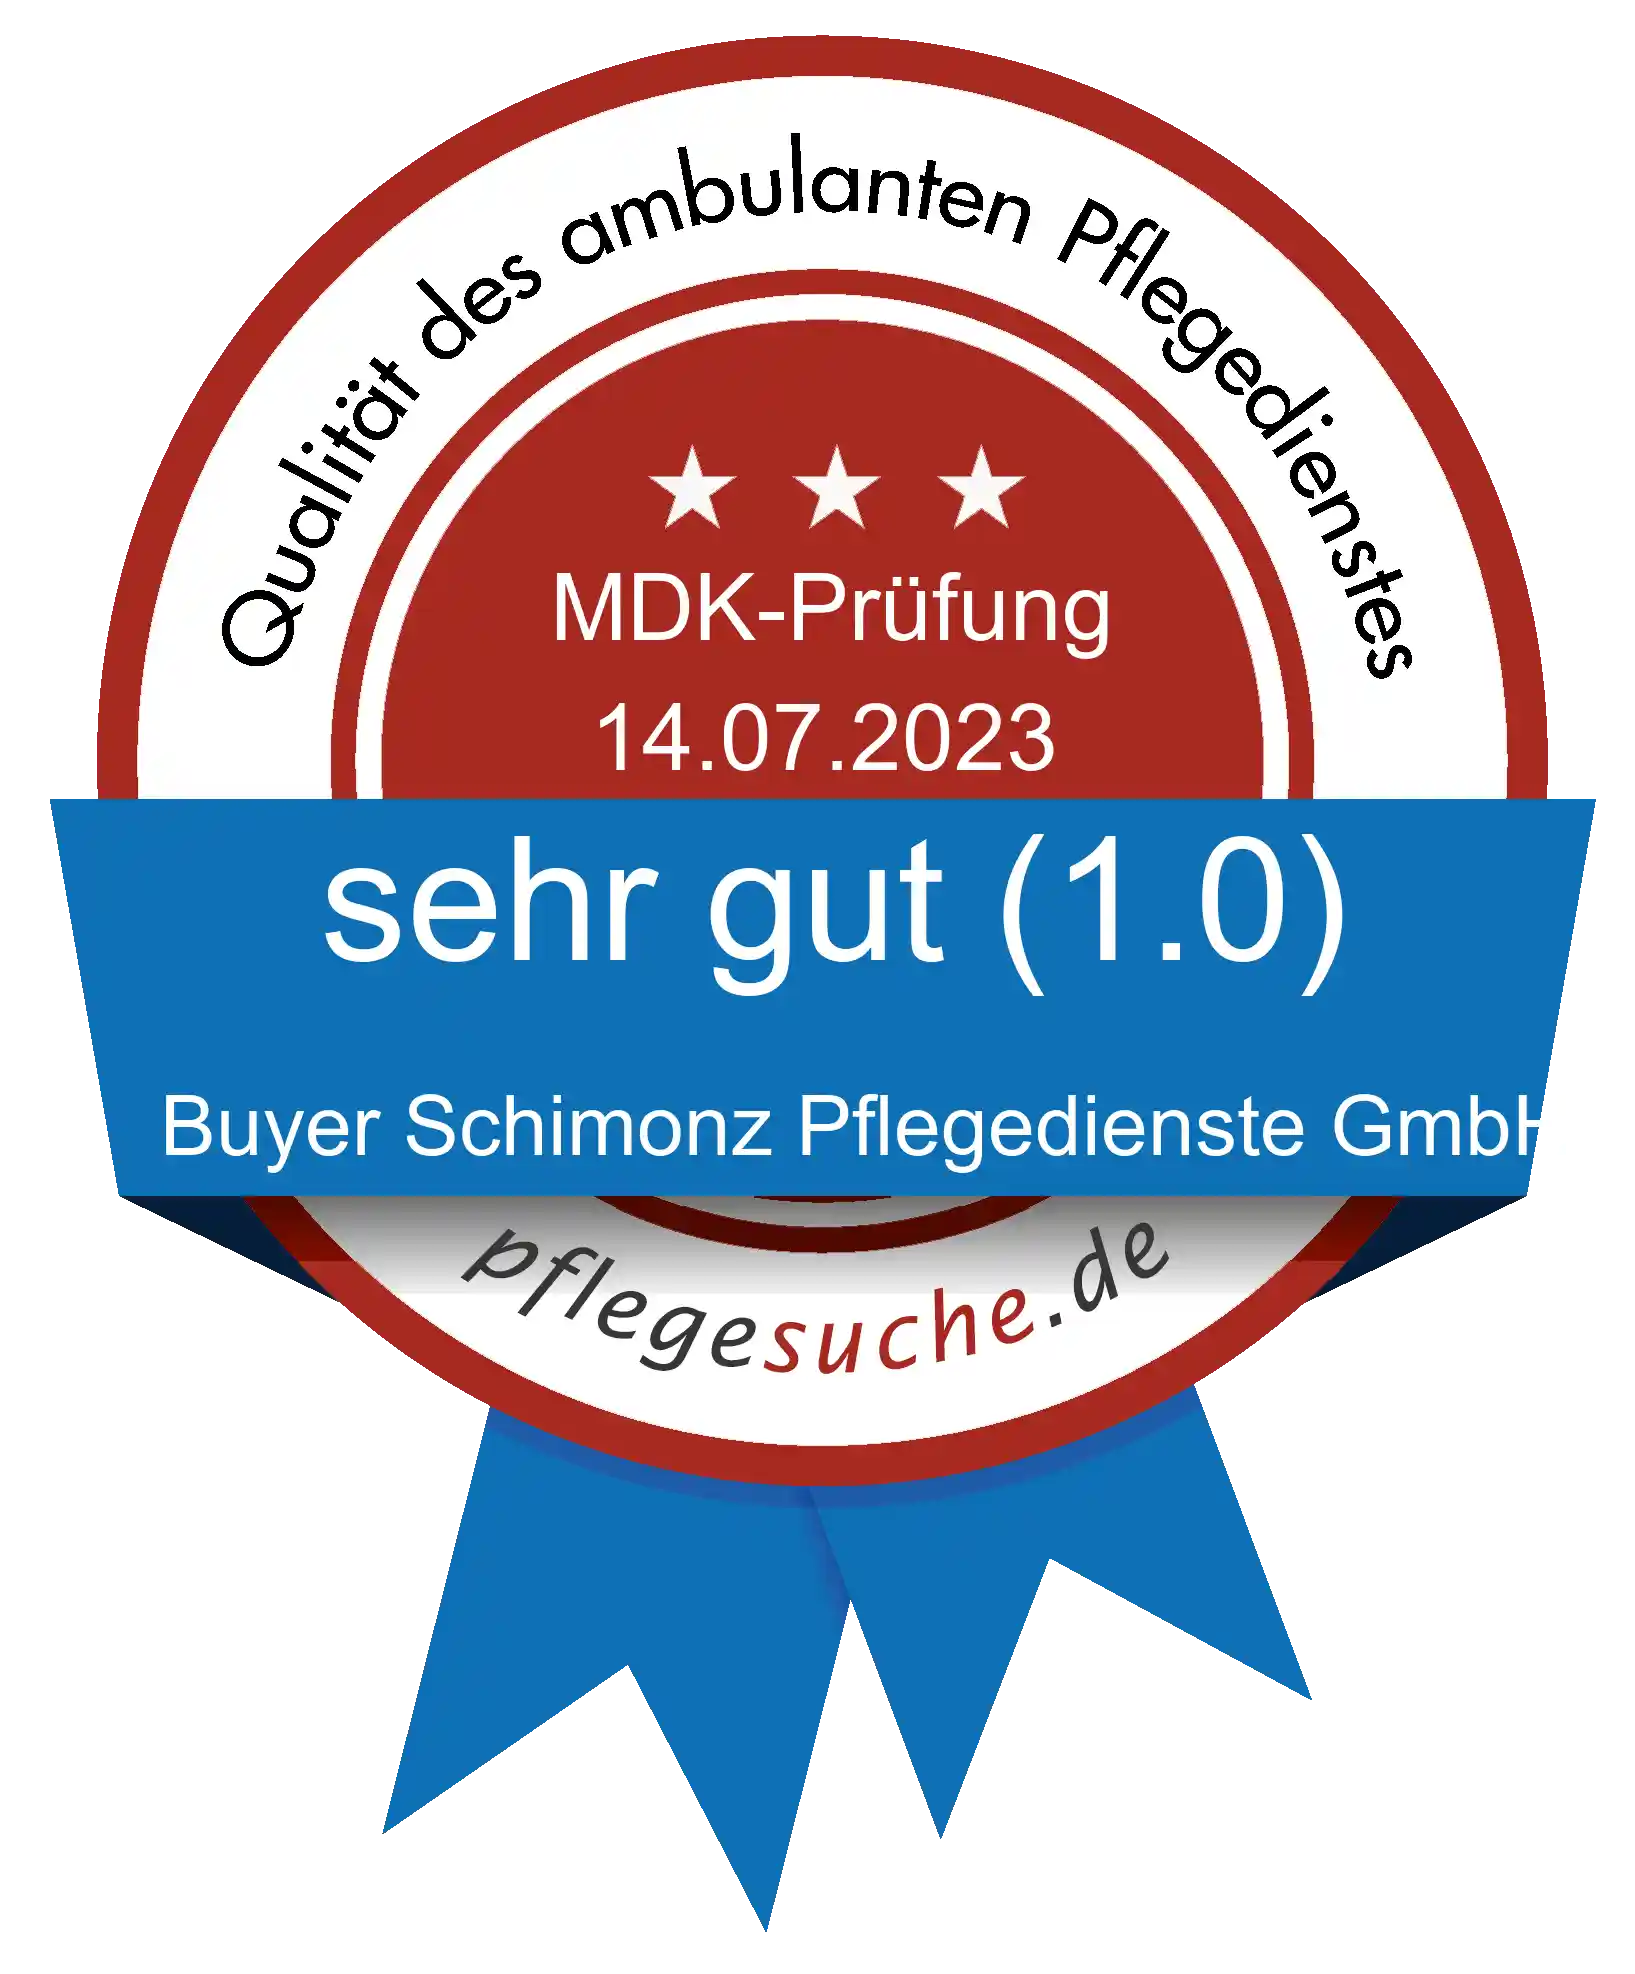 Siegel Benotung Buyer Schimonz Pflegedienste GmbH